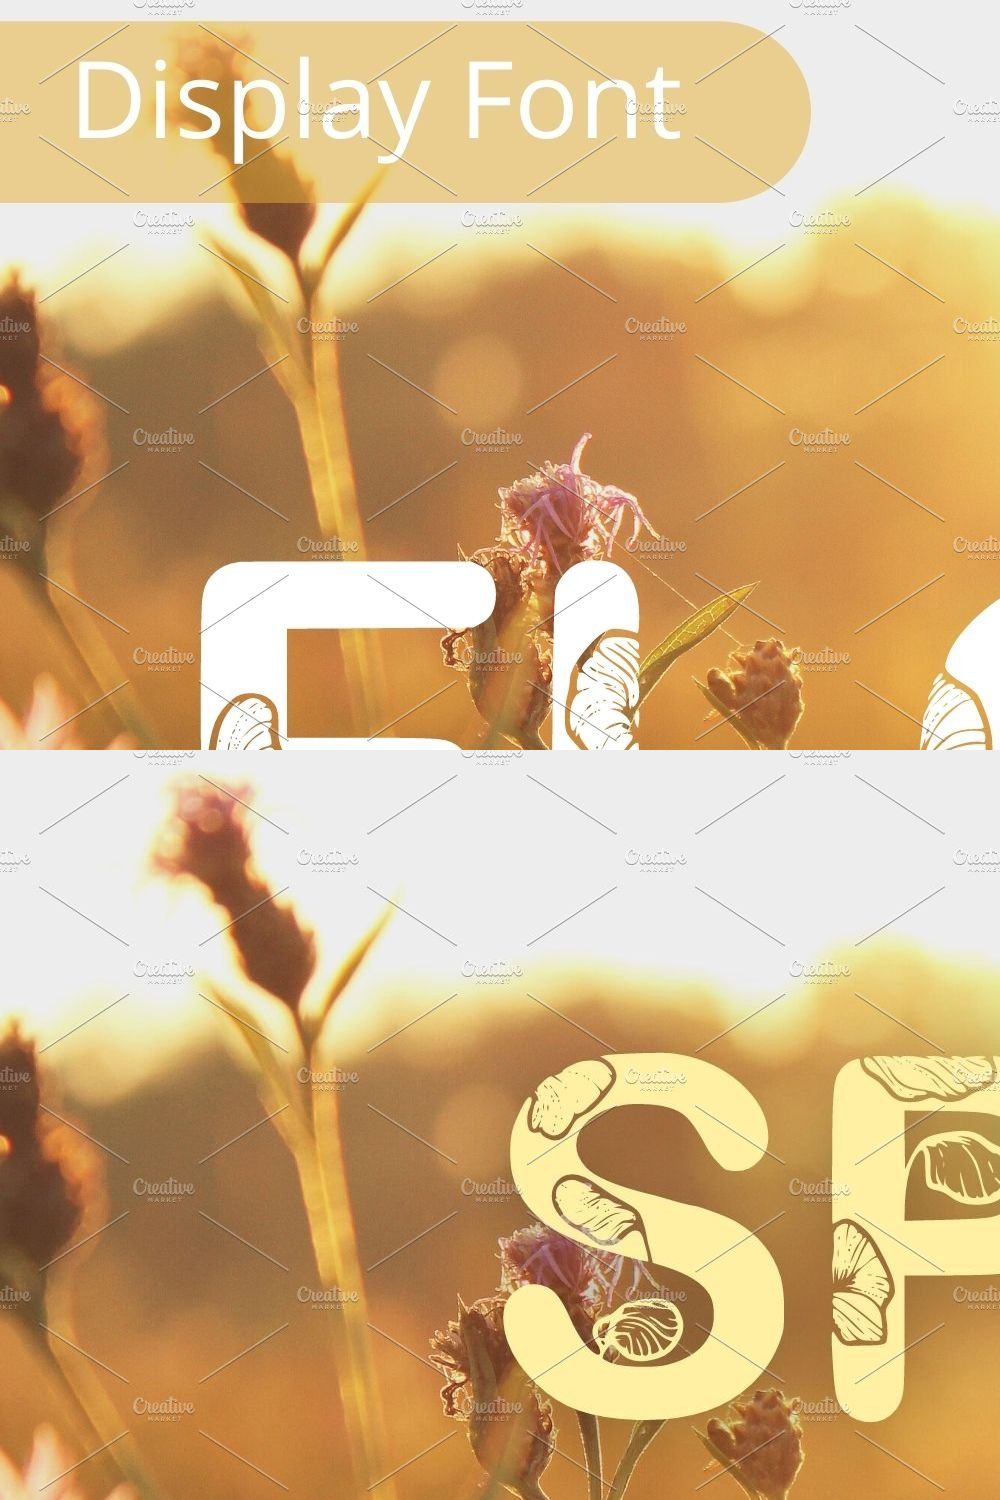 Floral Lover font, SVG cut flies pinterest preview image.